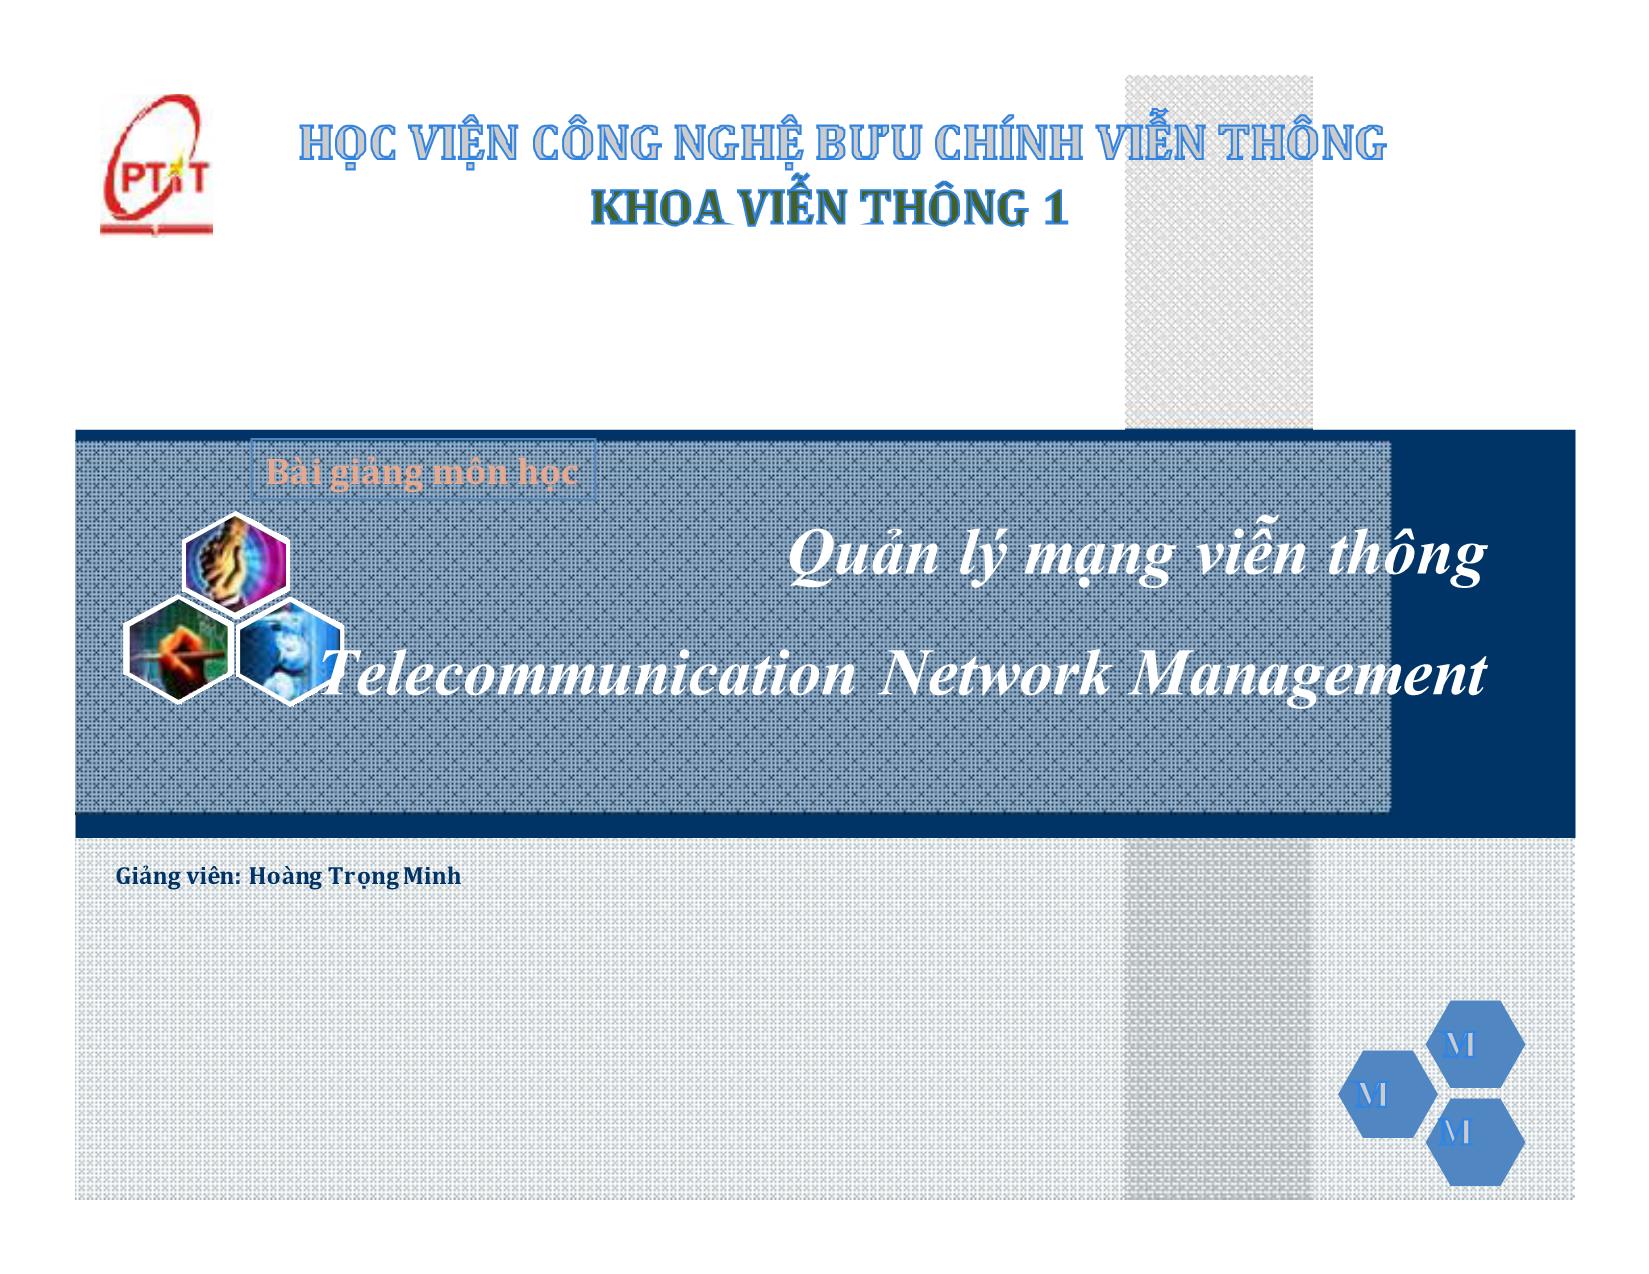 Bài giảng Quản lý mạng viễn thông Telecommunication Network Management trang 1